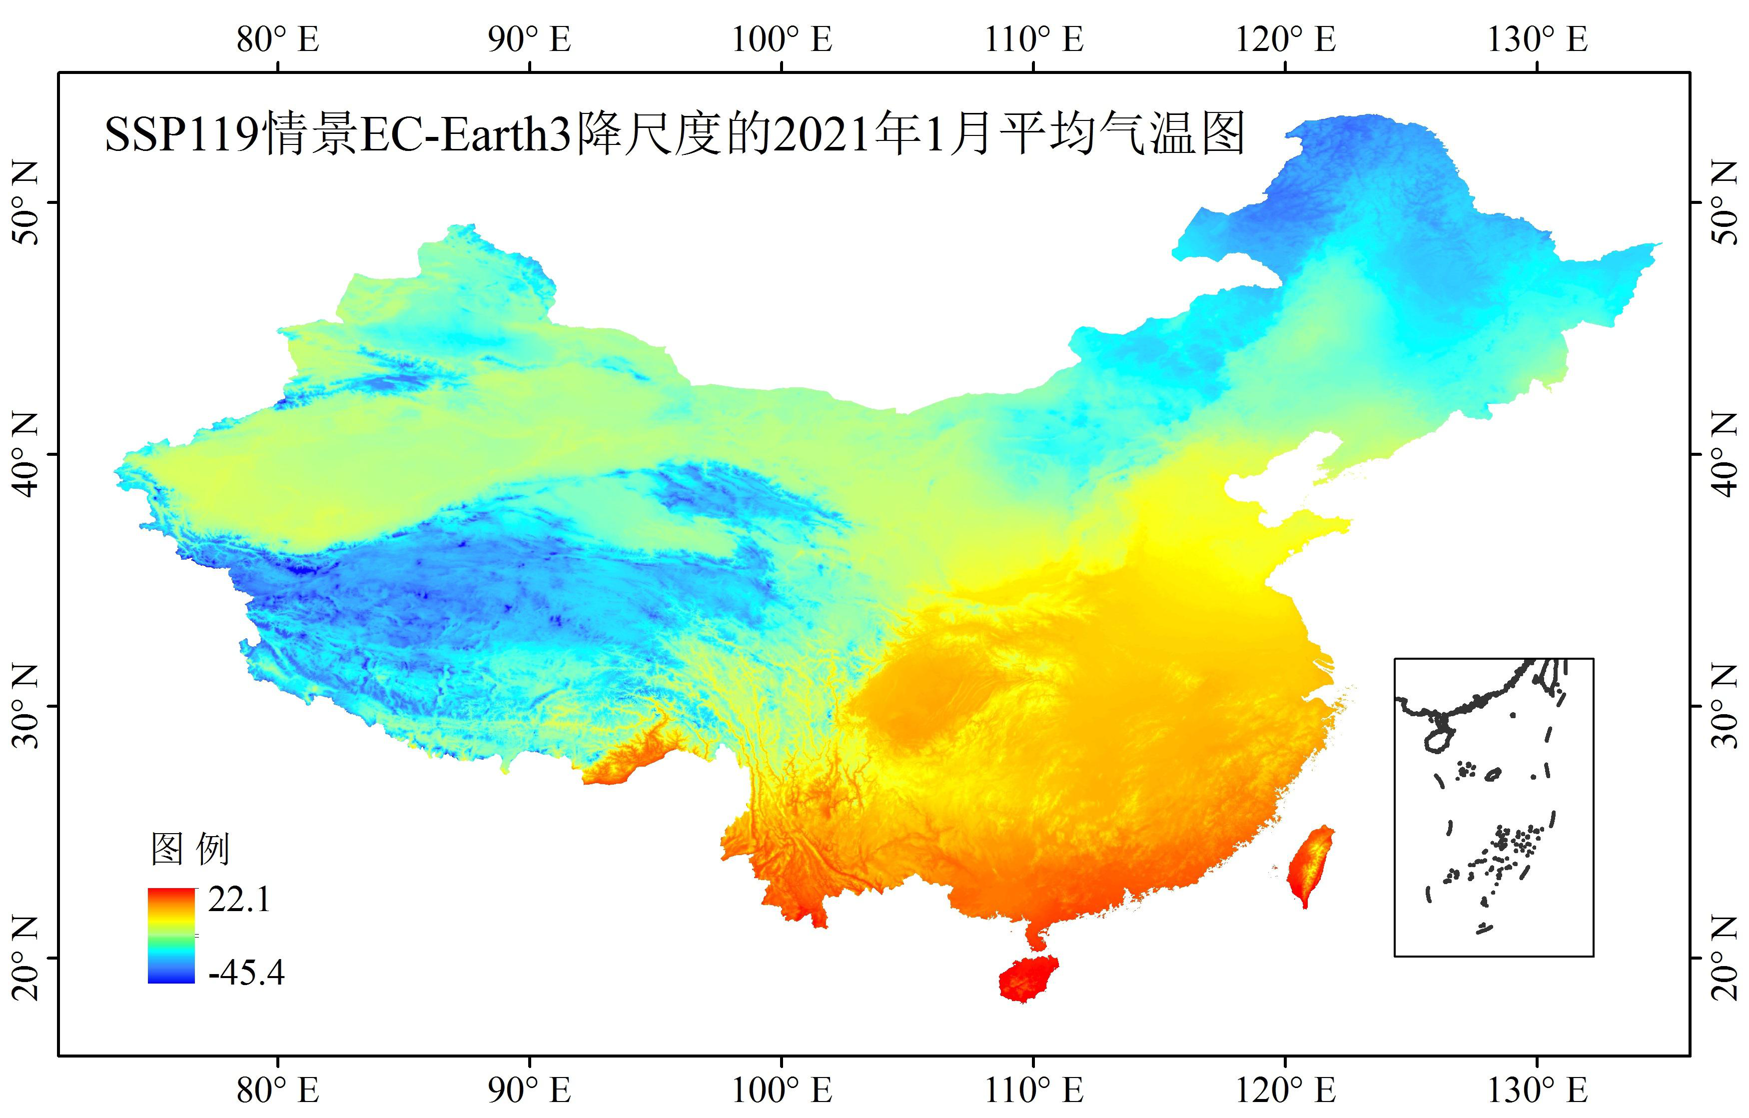 1 km multi-scenario and multi-model monthly temperature data for China in 2021-2100